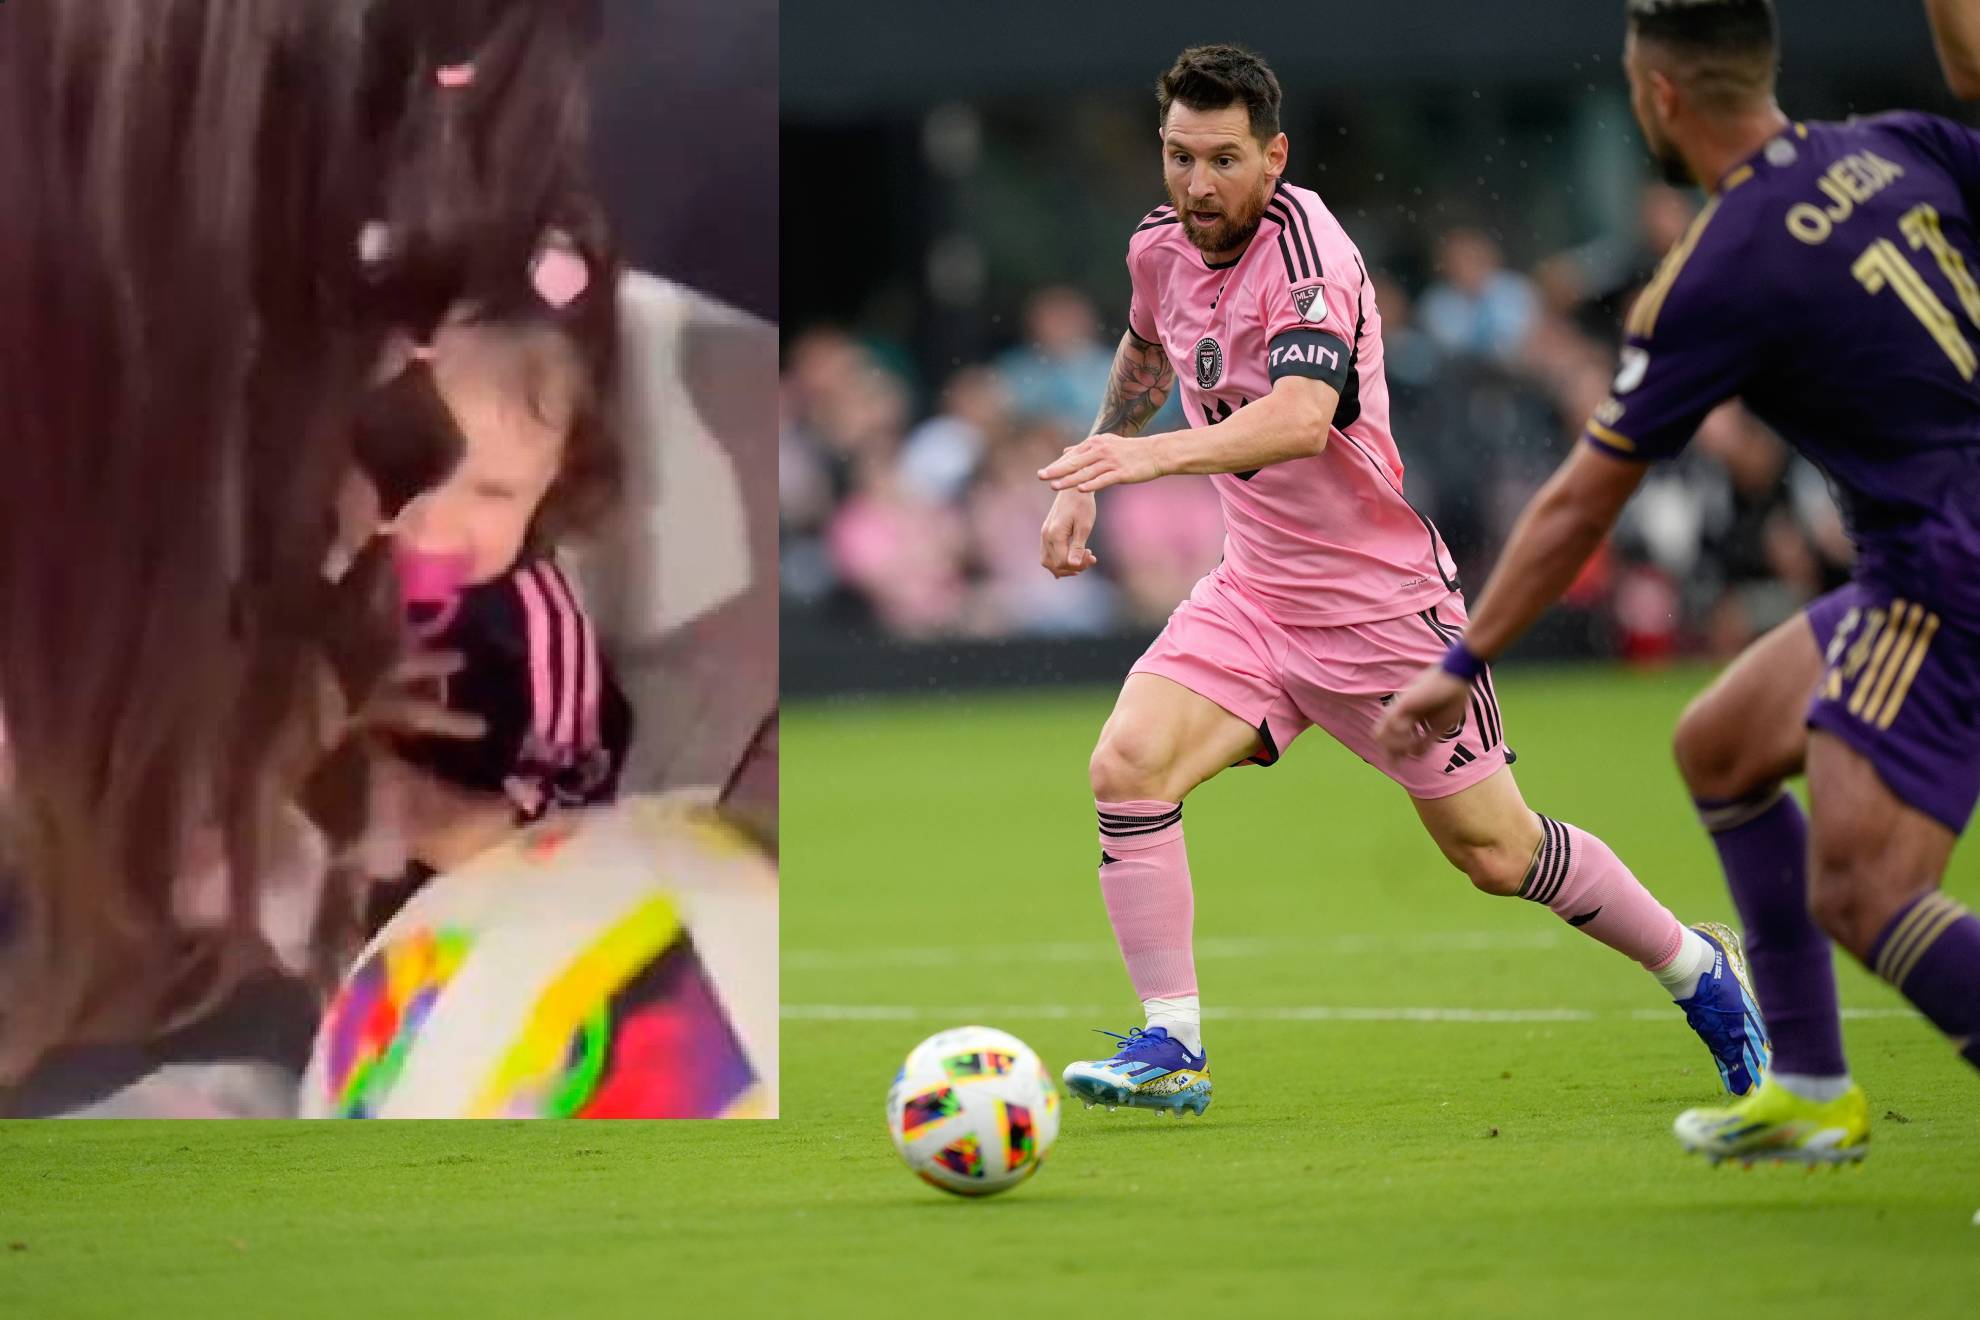 Niña recibe balonazo de Messi en el juego de Miami: "¿Estás bien, mi amor? Te pegó Messi, no pasa nada"